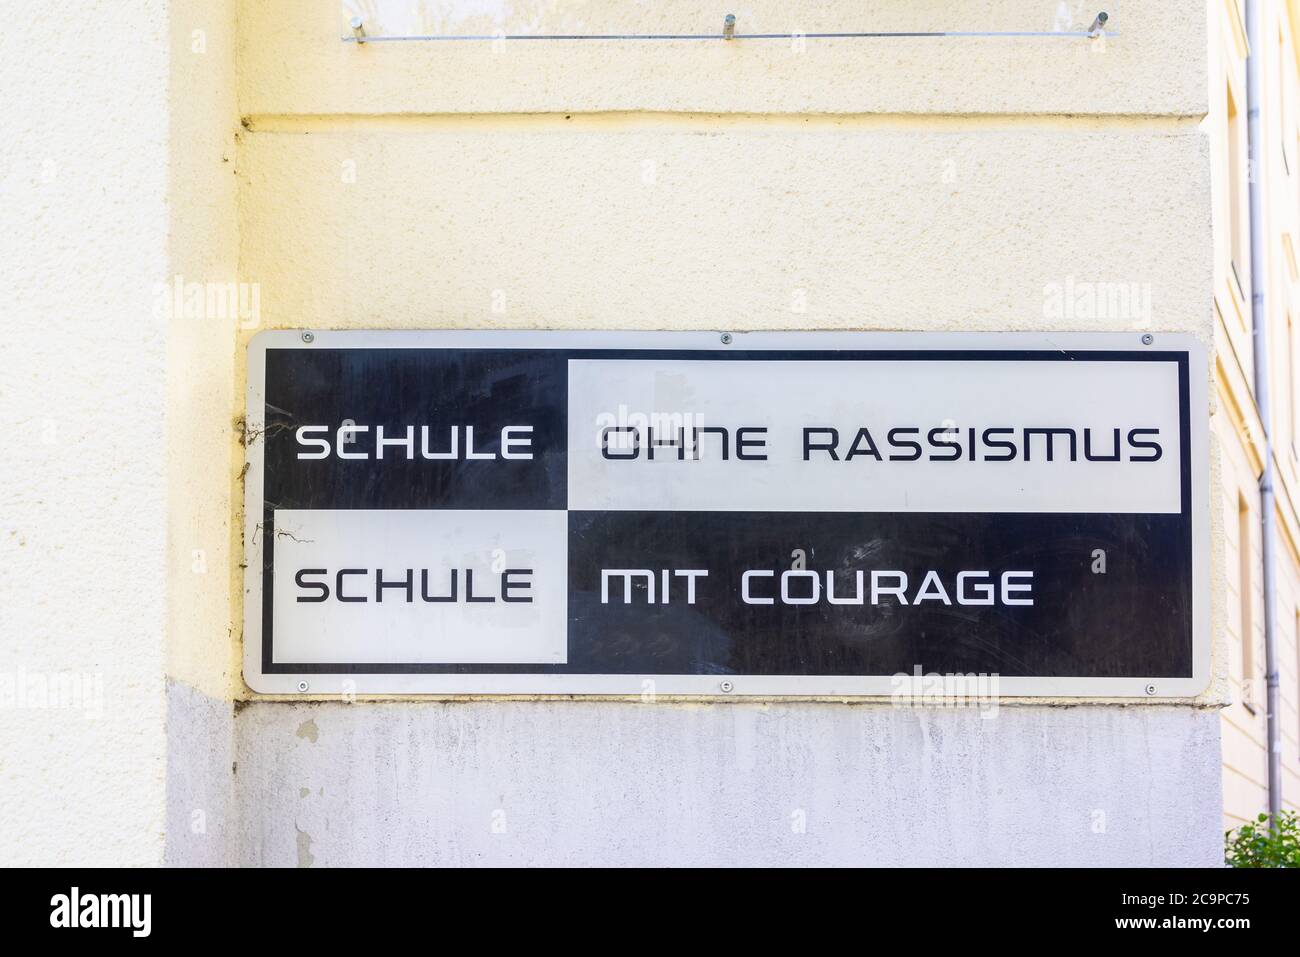 Schule ohne Rassismus, Schule mit courage Schild - école sans racisme, école avec signe de courage devant un collège allemand à Berlin, Allemagne, Europe Banque D'Images